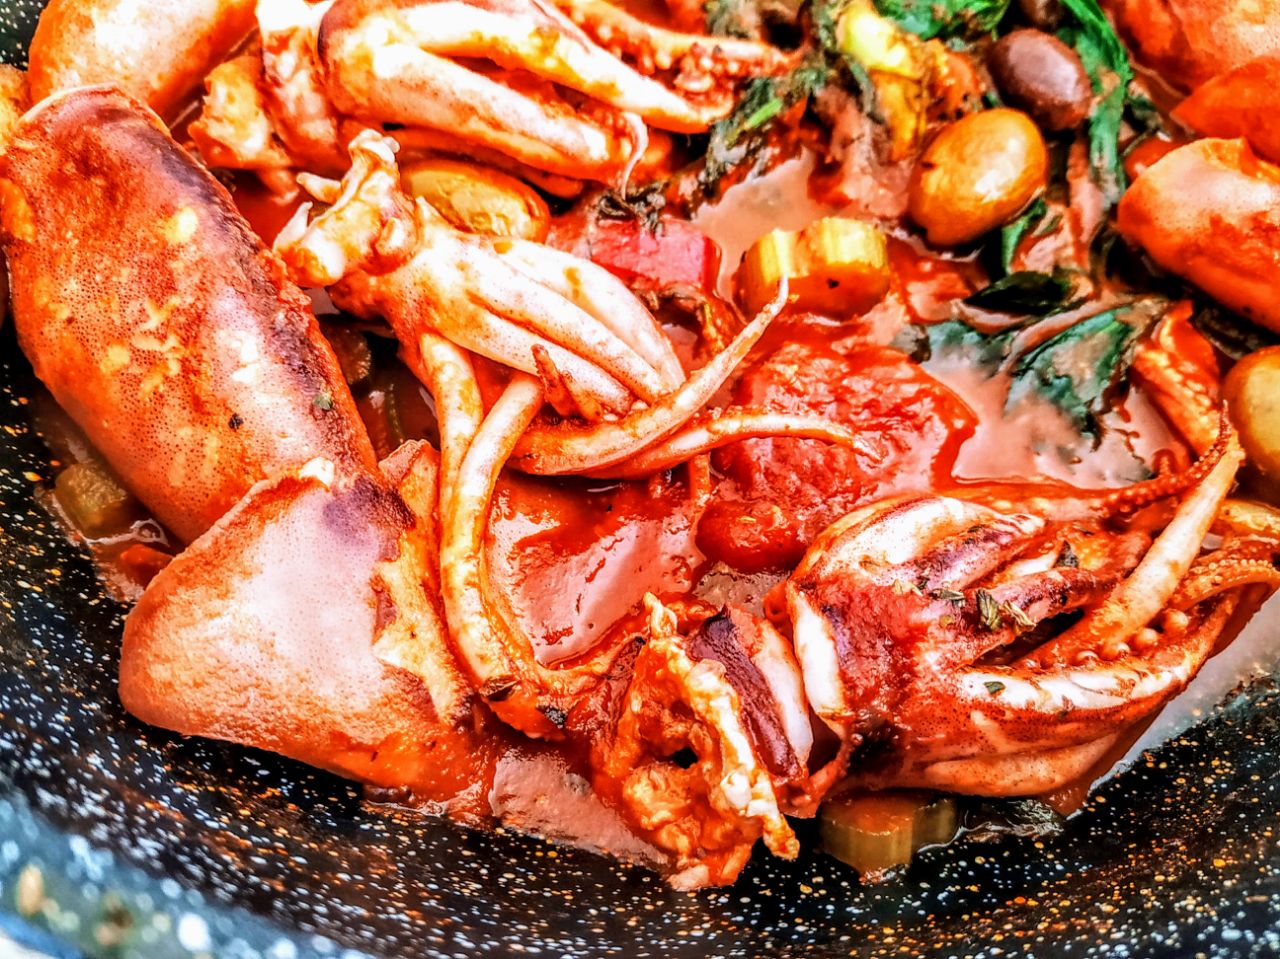 Secondi piatti a base di pesce: totani al pomodoro con datterini pelati bio olive e olio extravergine d'oliva